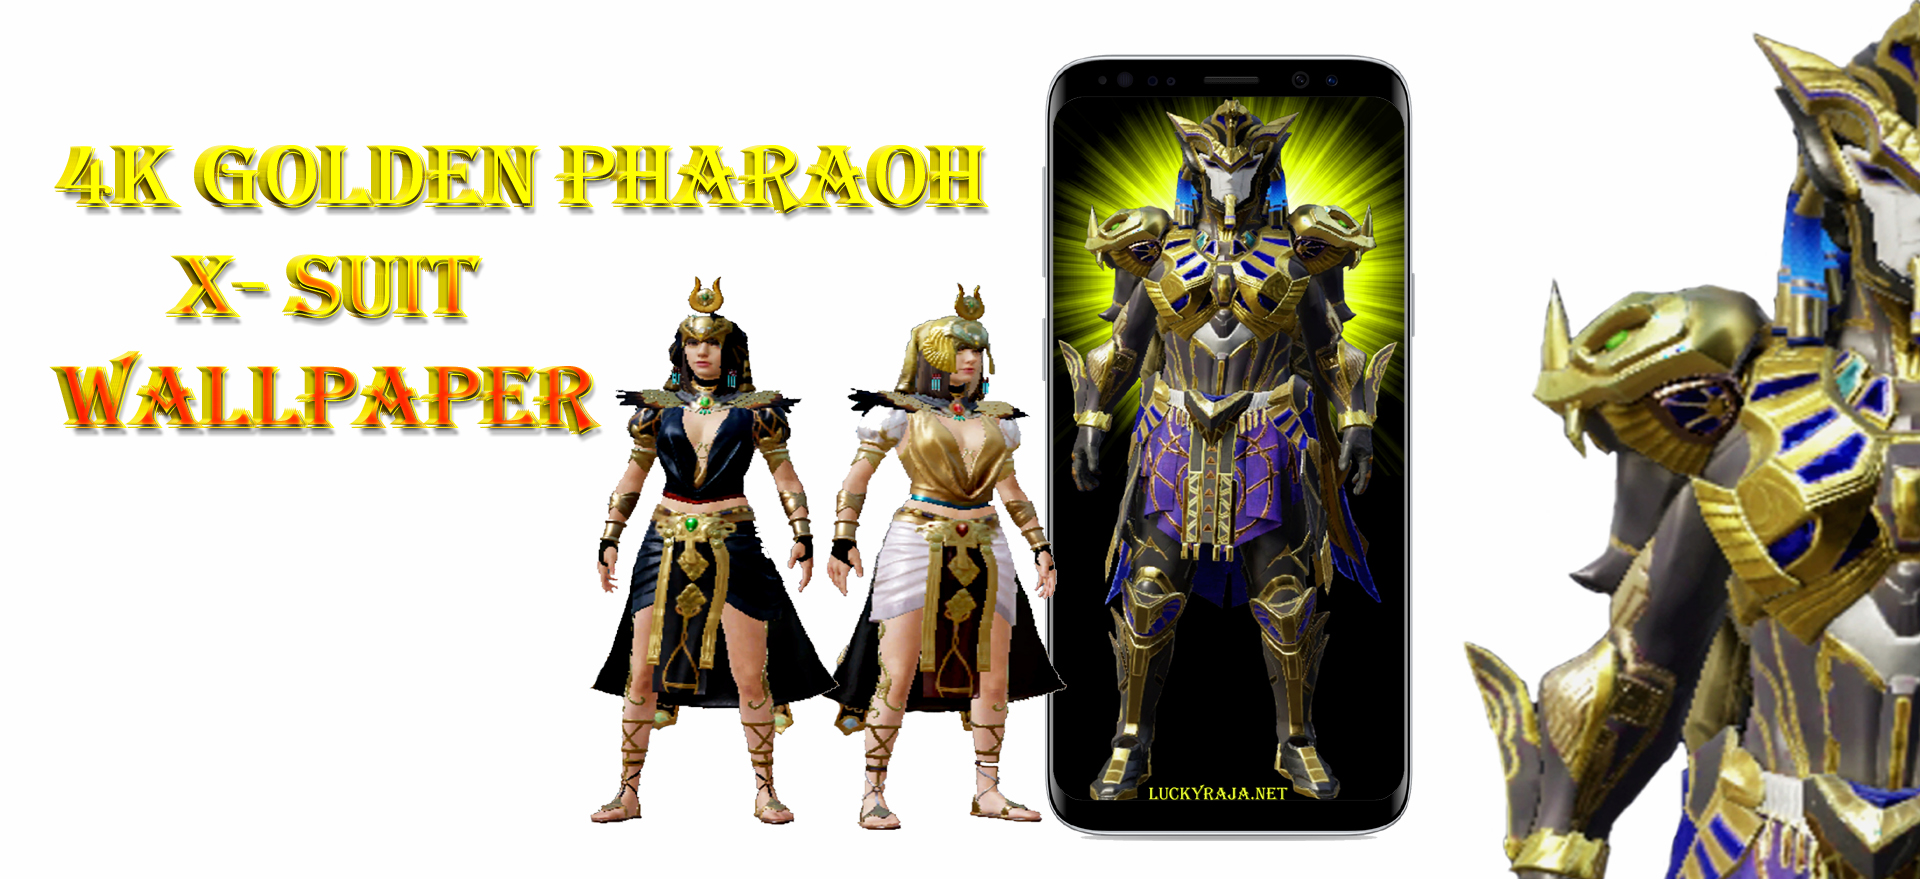 Golden pharaoh wallpaper,Golden pharaoh  suit